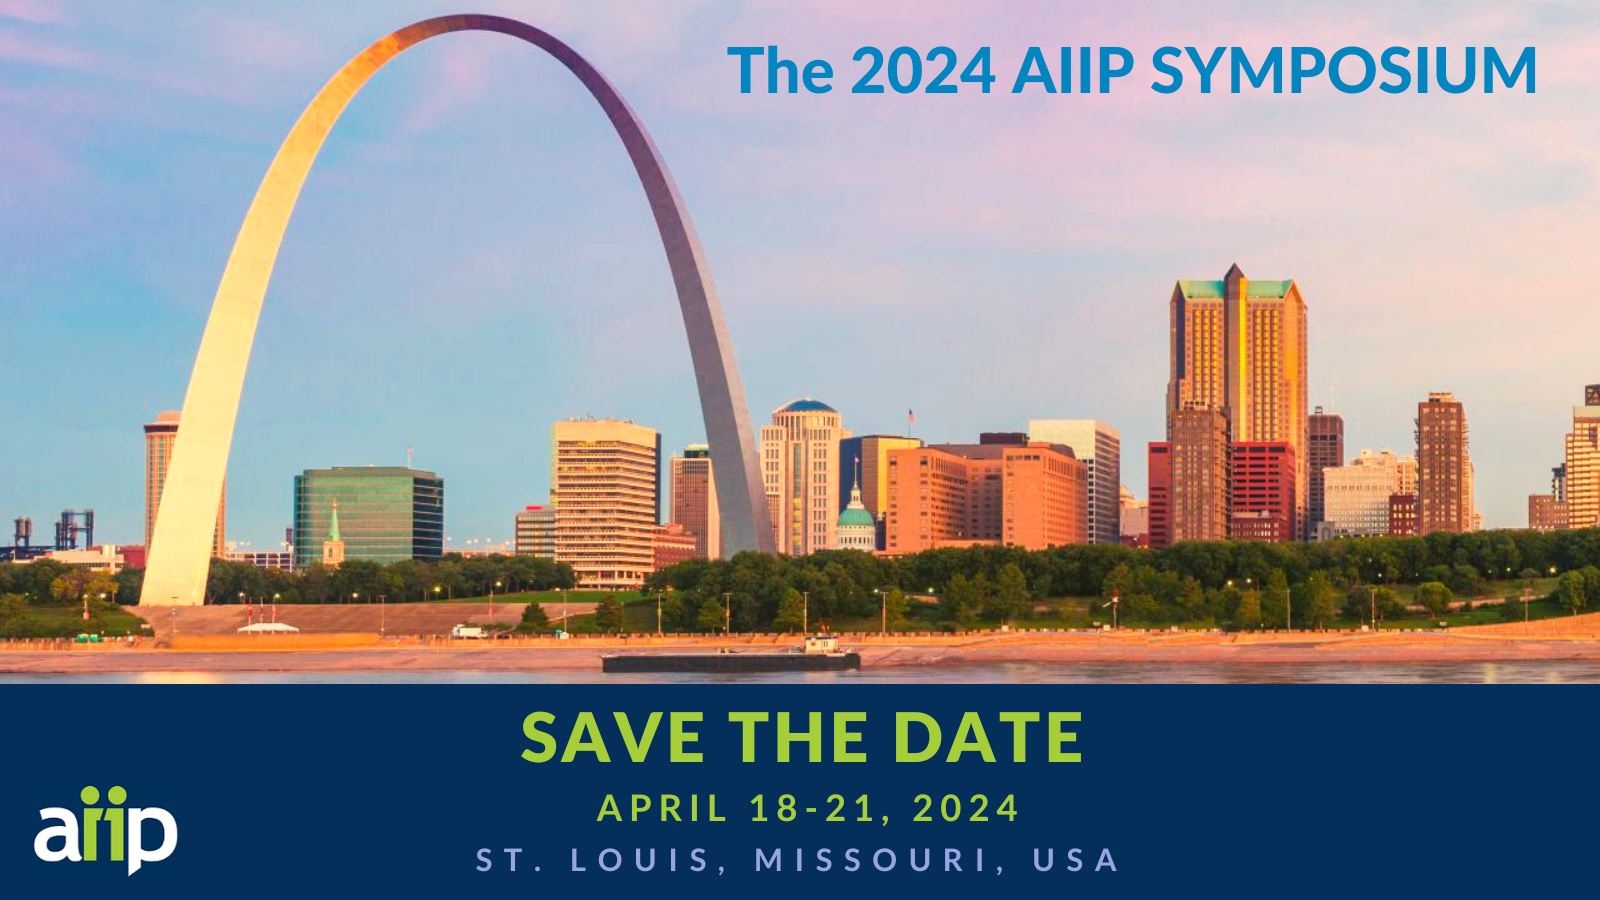 2024 AIIP Symposium:  April 18-21, 2024, St. Louis, Missouri, USA